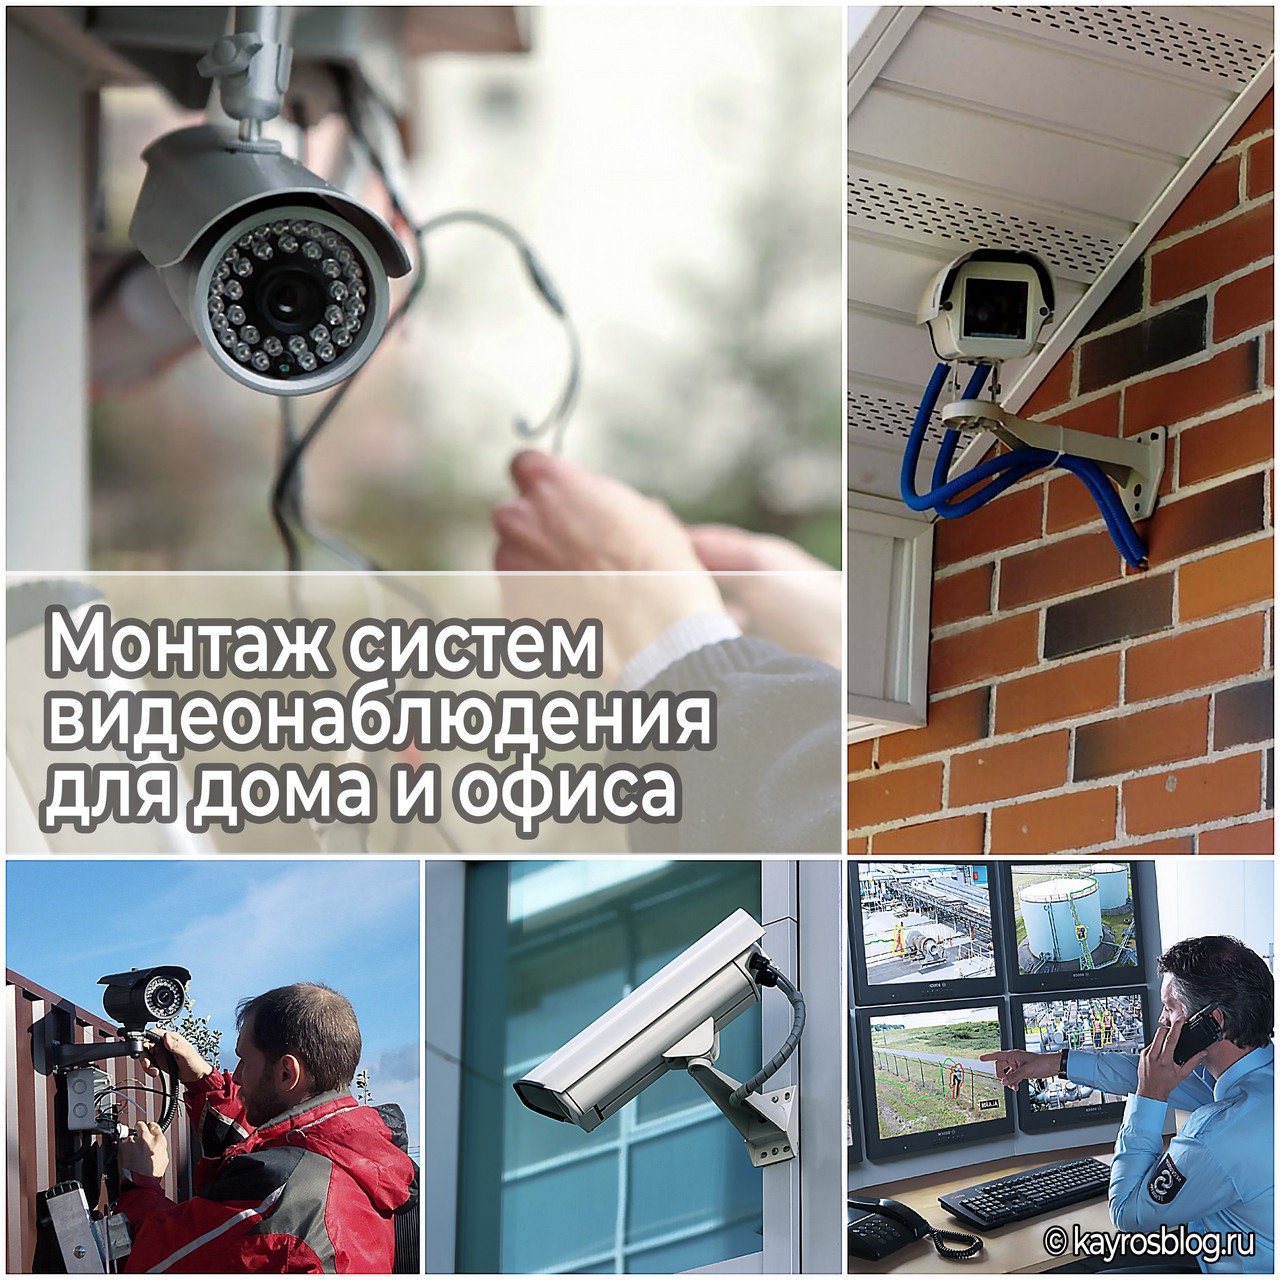 Монтаж систем видеонаблюдения для дома и офиса